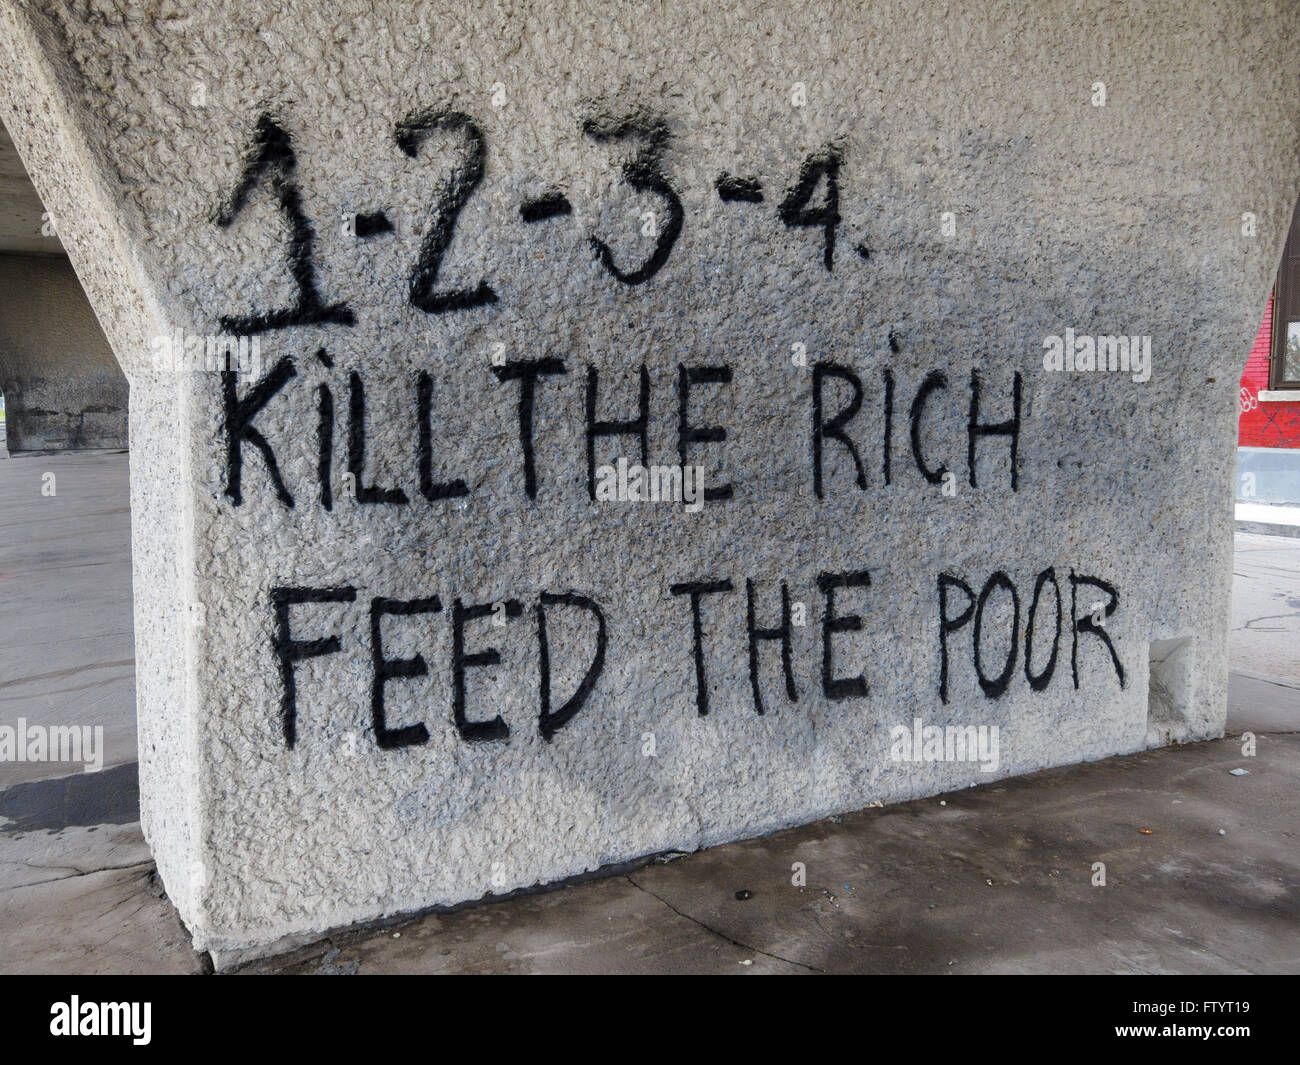 1-2-3-4, töten die reichen, die Armen zu ernähren. Protestierende Einkommensungleichheit Graffiti. Montreal, Quebec, Kanada. Stockfoto